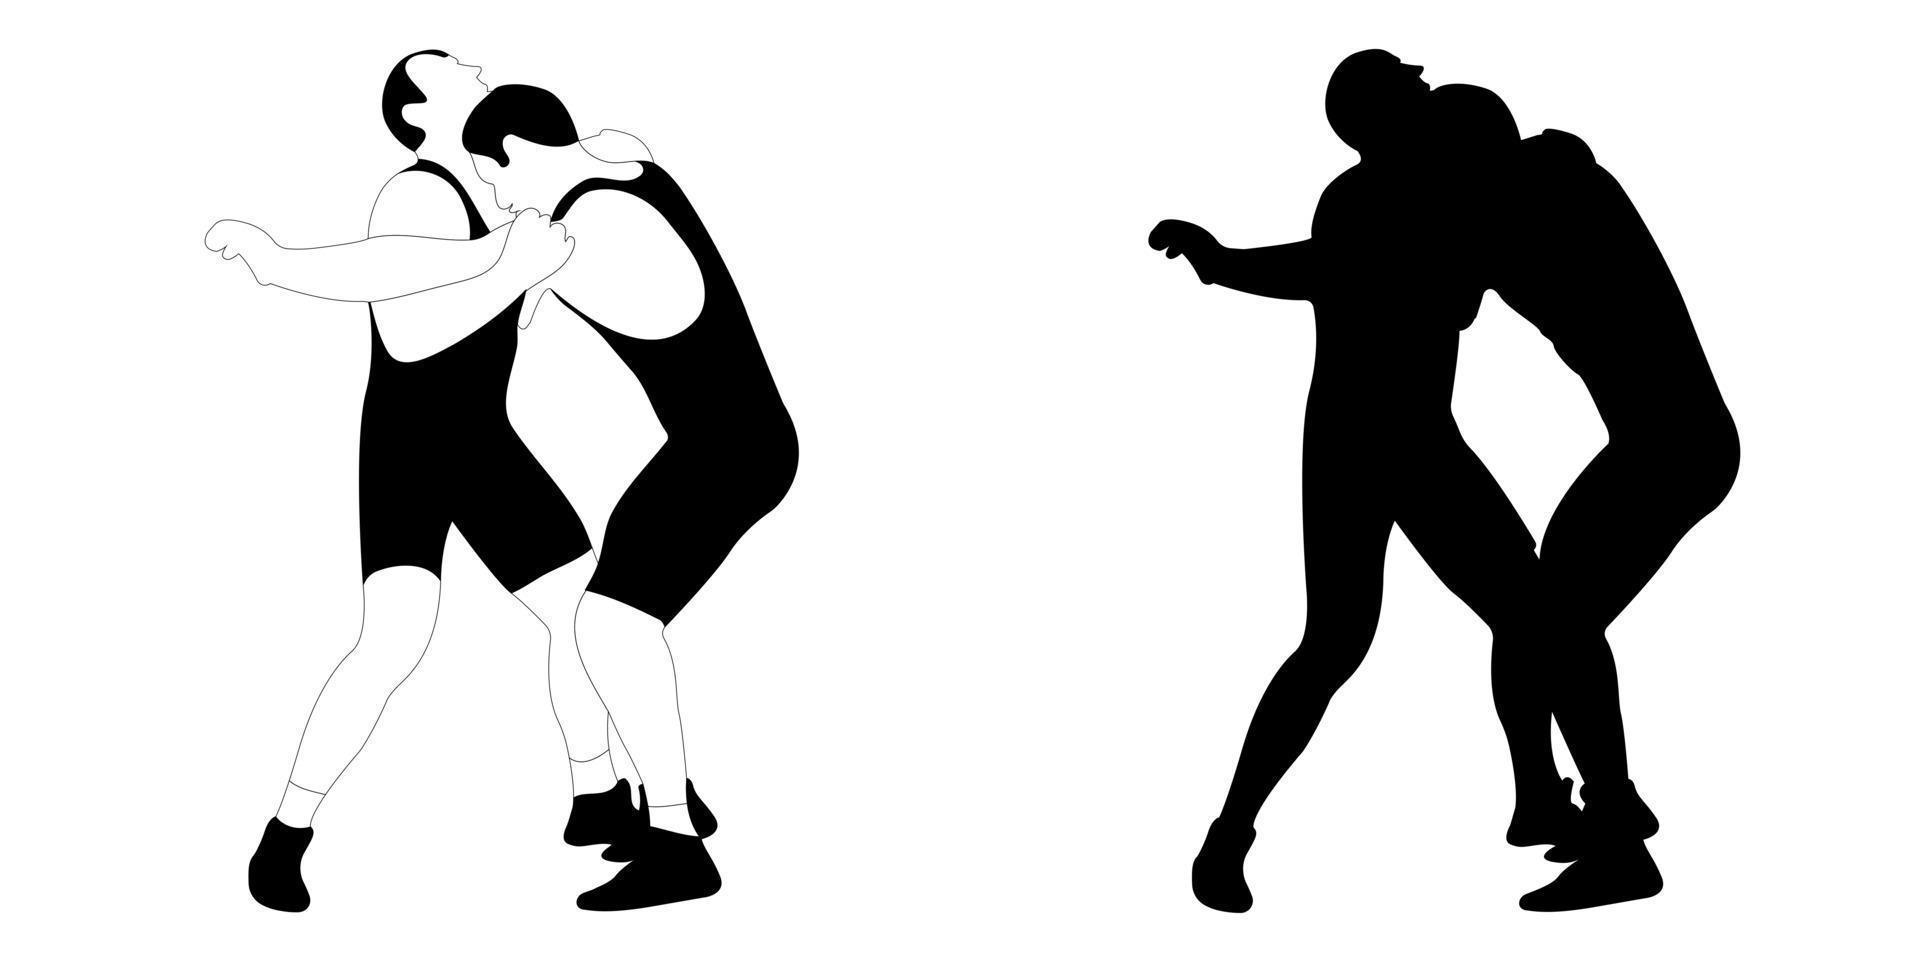 contour de la silhouette de l'athlète lutteur en lutte, duel, combat. lutte gréco-romaine, libre, classique. vecteur